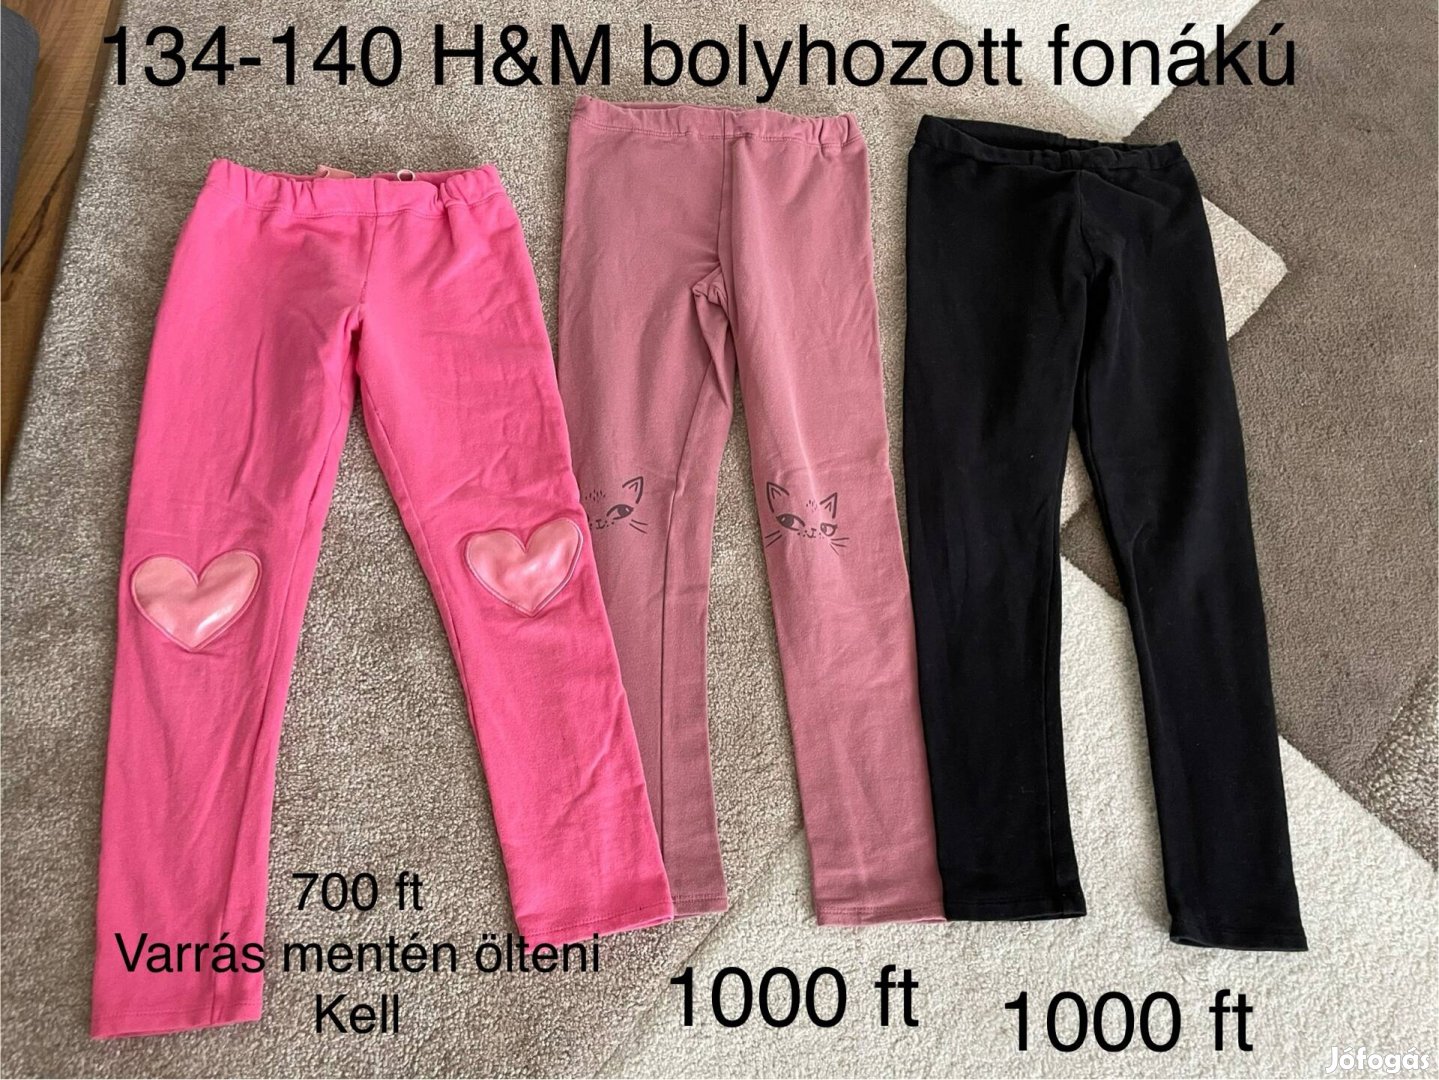 134-140-es bolyhozott fonákú H&M kislány nadrágok